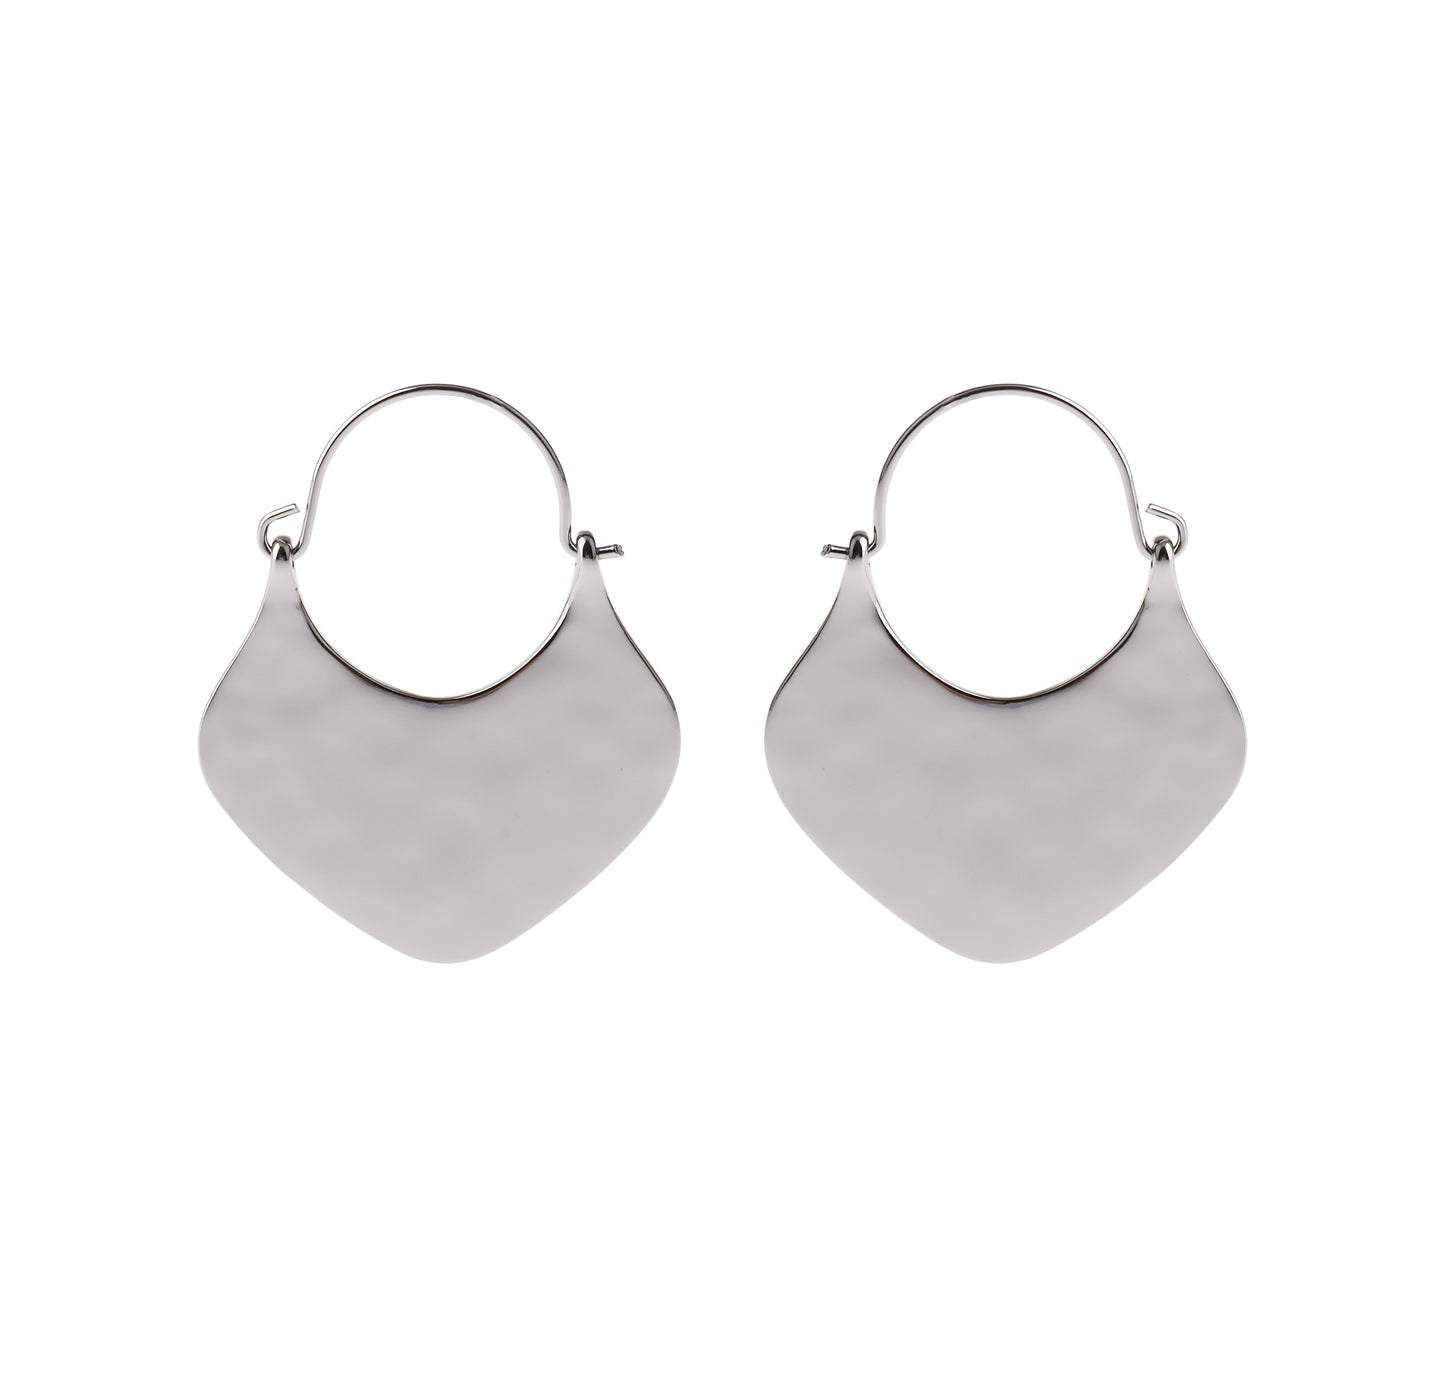 Silver Hammered Metal Hoop Earrings